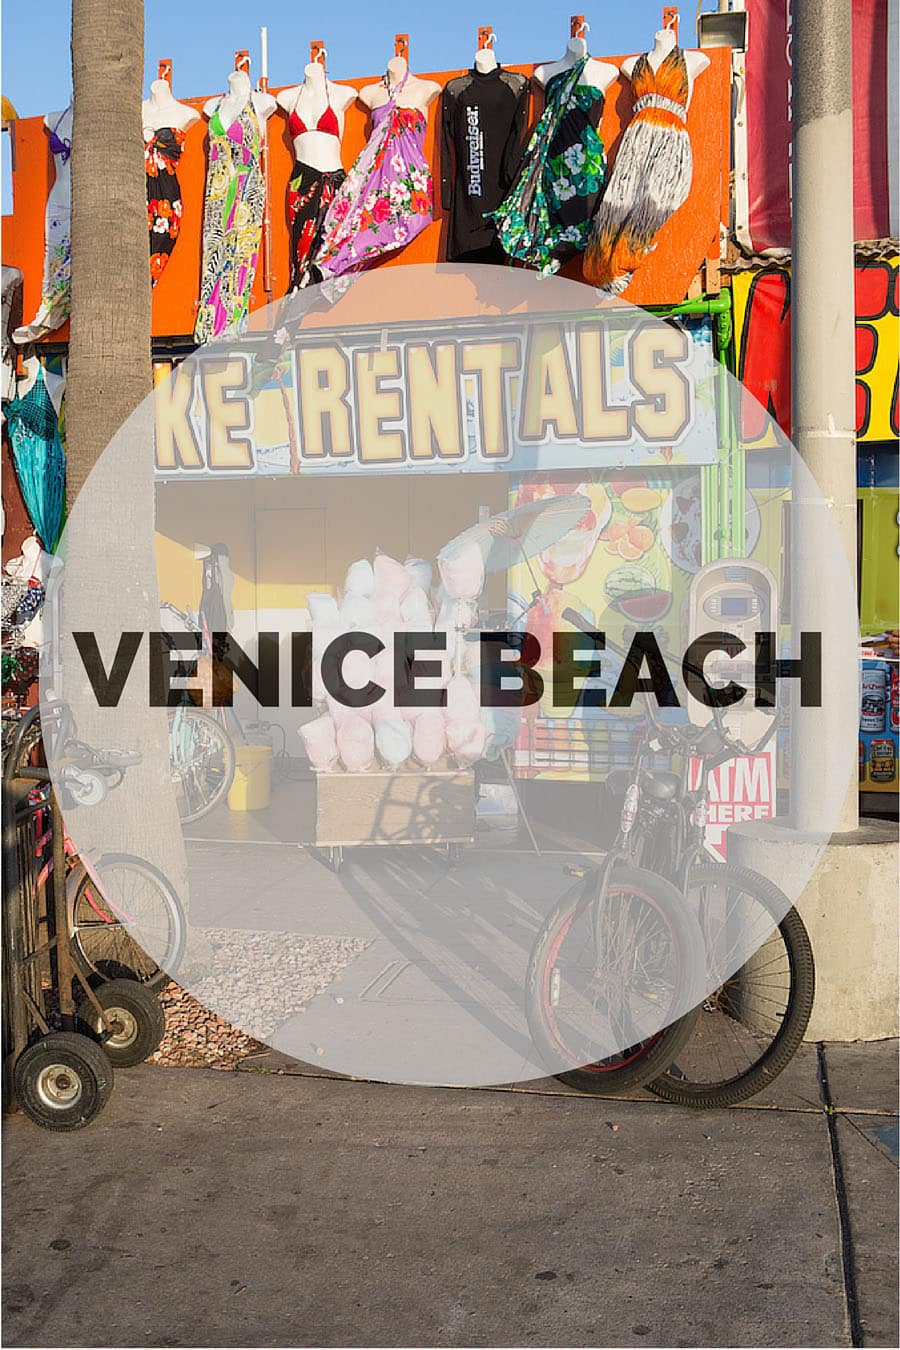 48 Hours in Venice Beach